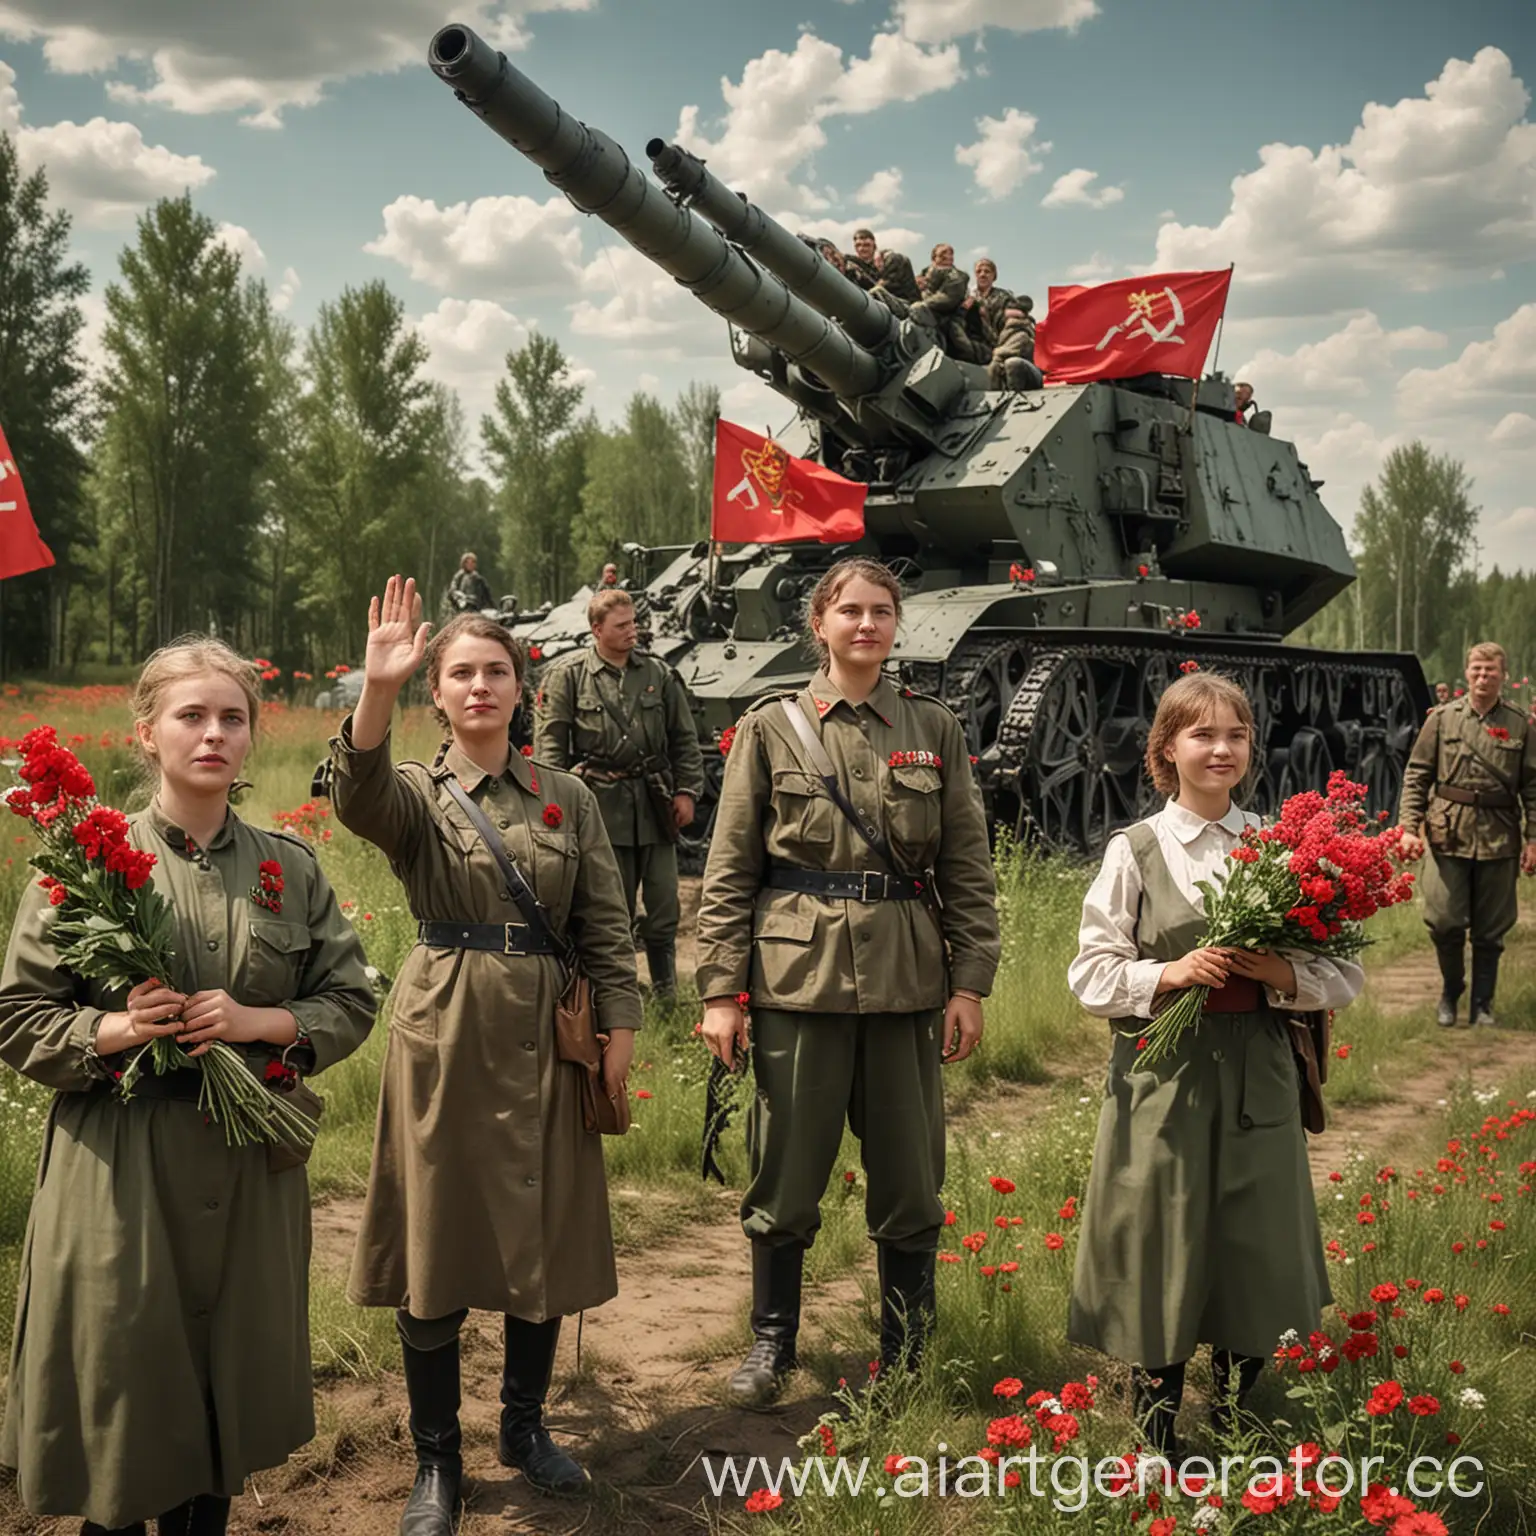 Сгенерируй картинку советских времен для праздника 3 июля освобождение беларуси  на картинке должно быть изображено катюша (артилеийское орудие) и семья  с цветами в руках которые смотрят на катюшу